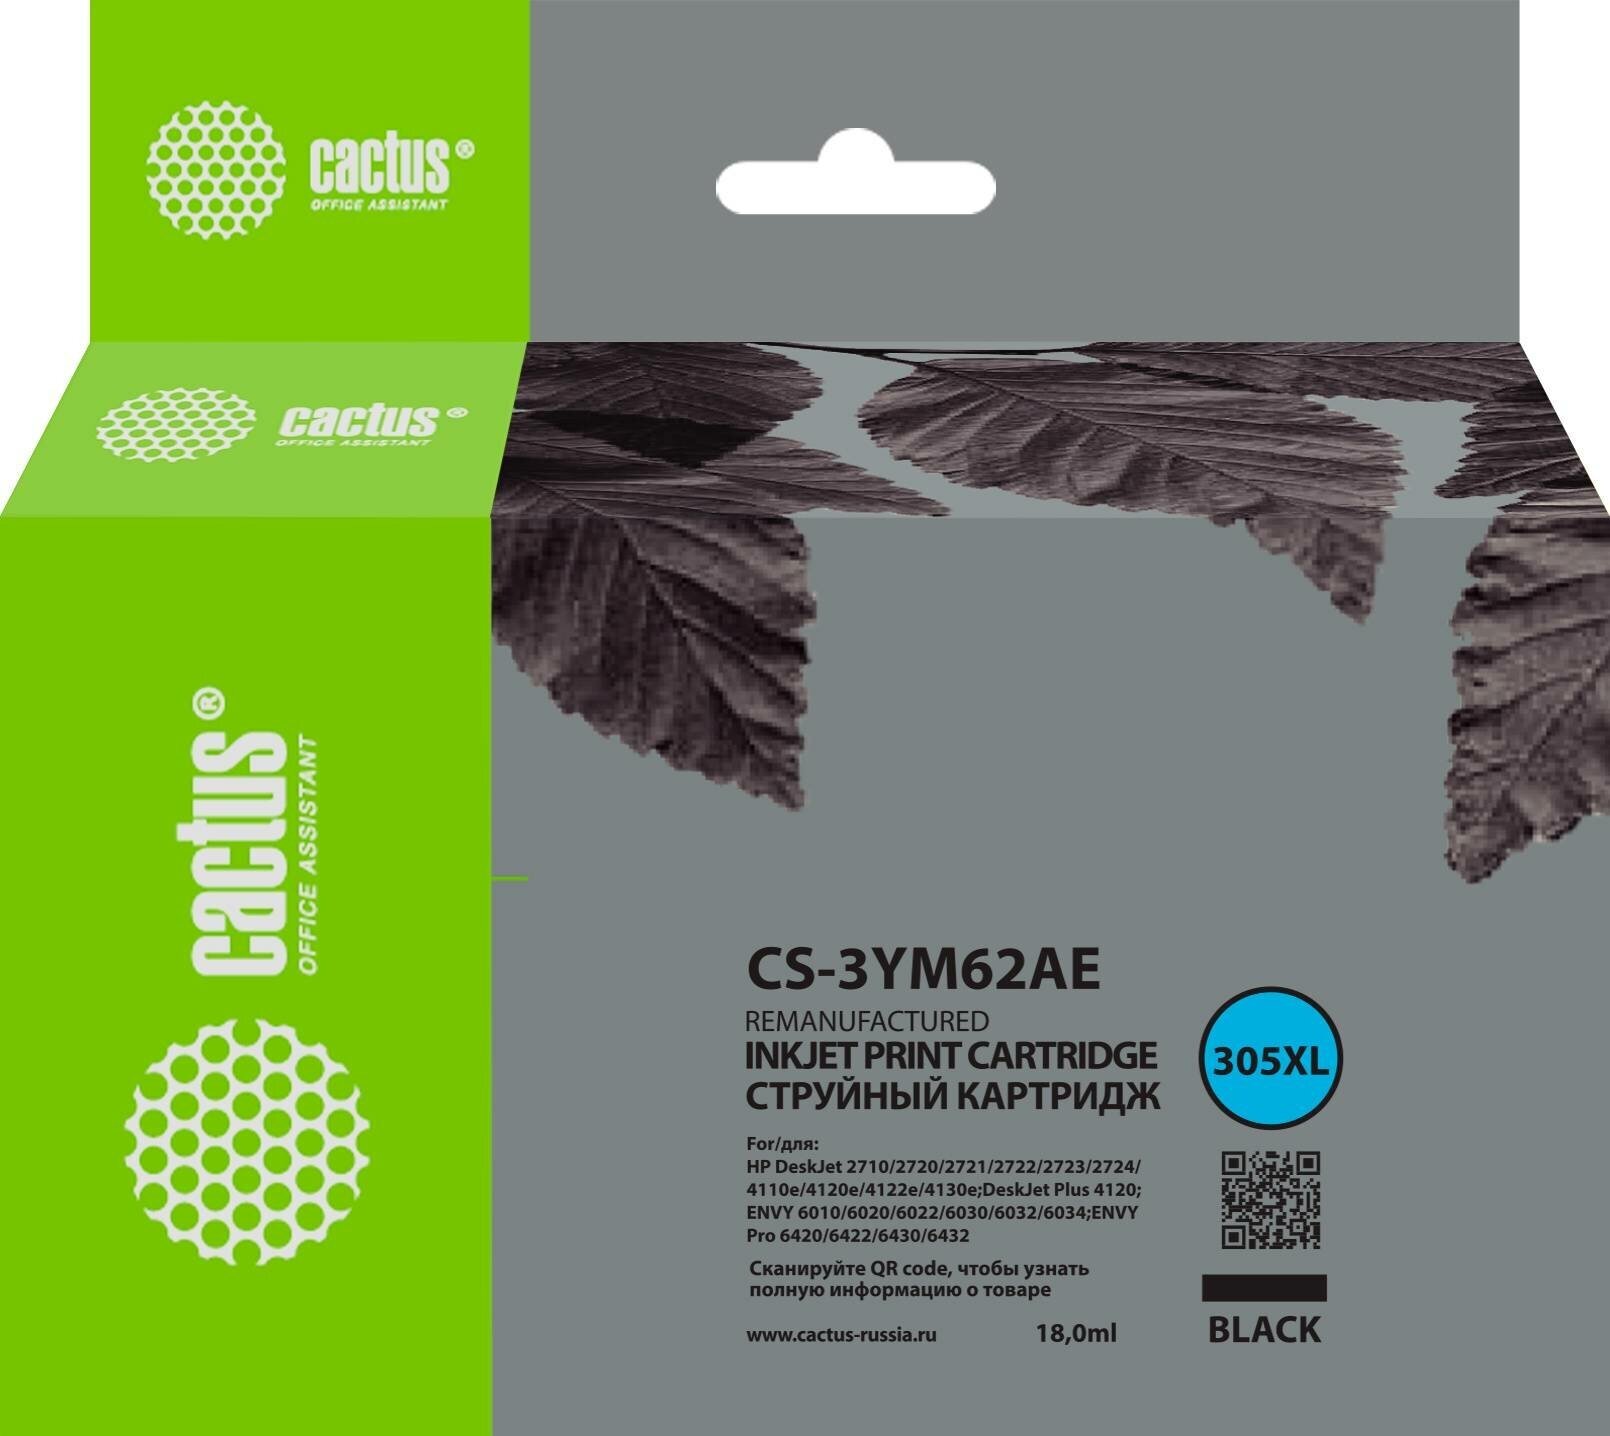 Картридж струйный CACTUS (CS-3YM62AE) для HP Deskjet 2320/2710/2720/2723/4120/4122/4130, черный